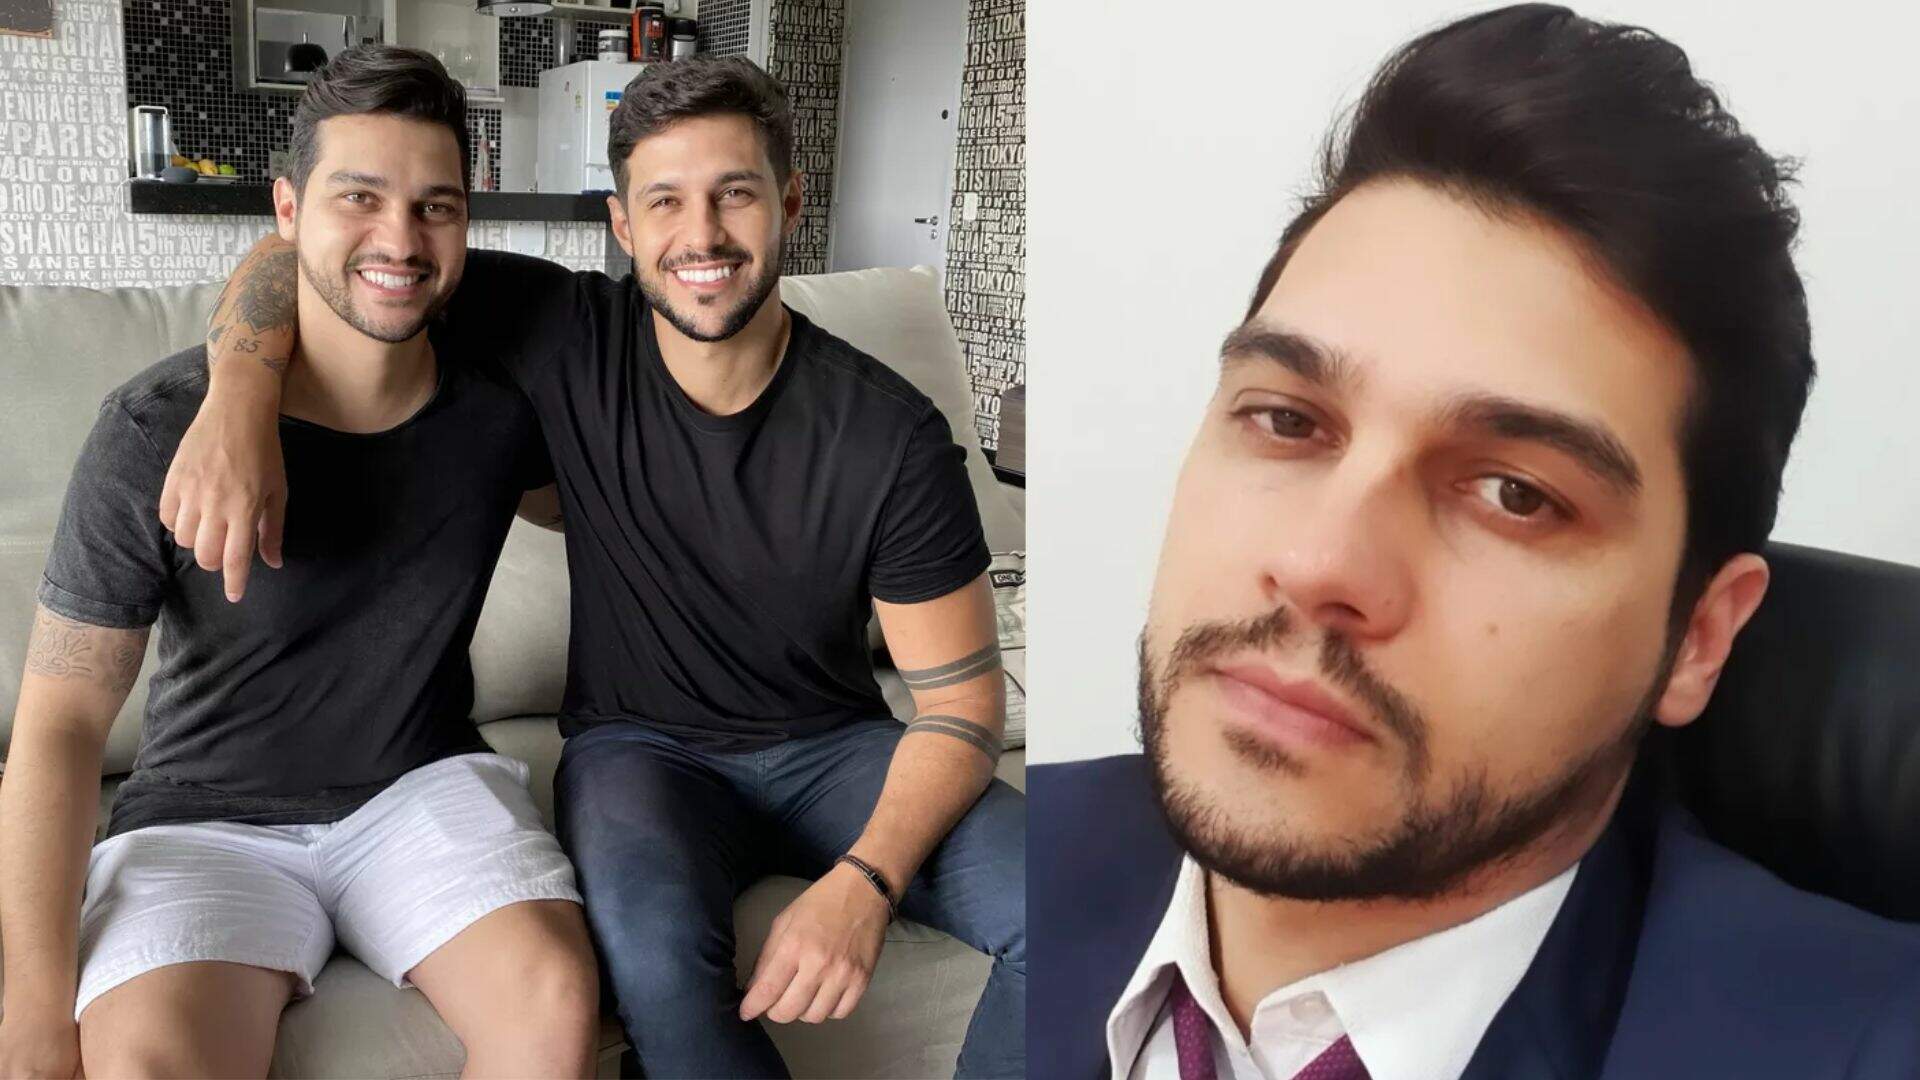 Casos de família! Irmão de Rodrigo Mussi faz acusação contra o ex-BBB e choca: “Medo de aparecer” - Metropolitana FM